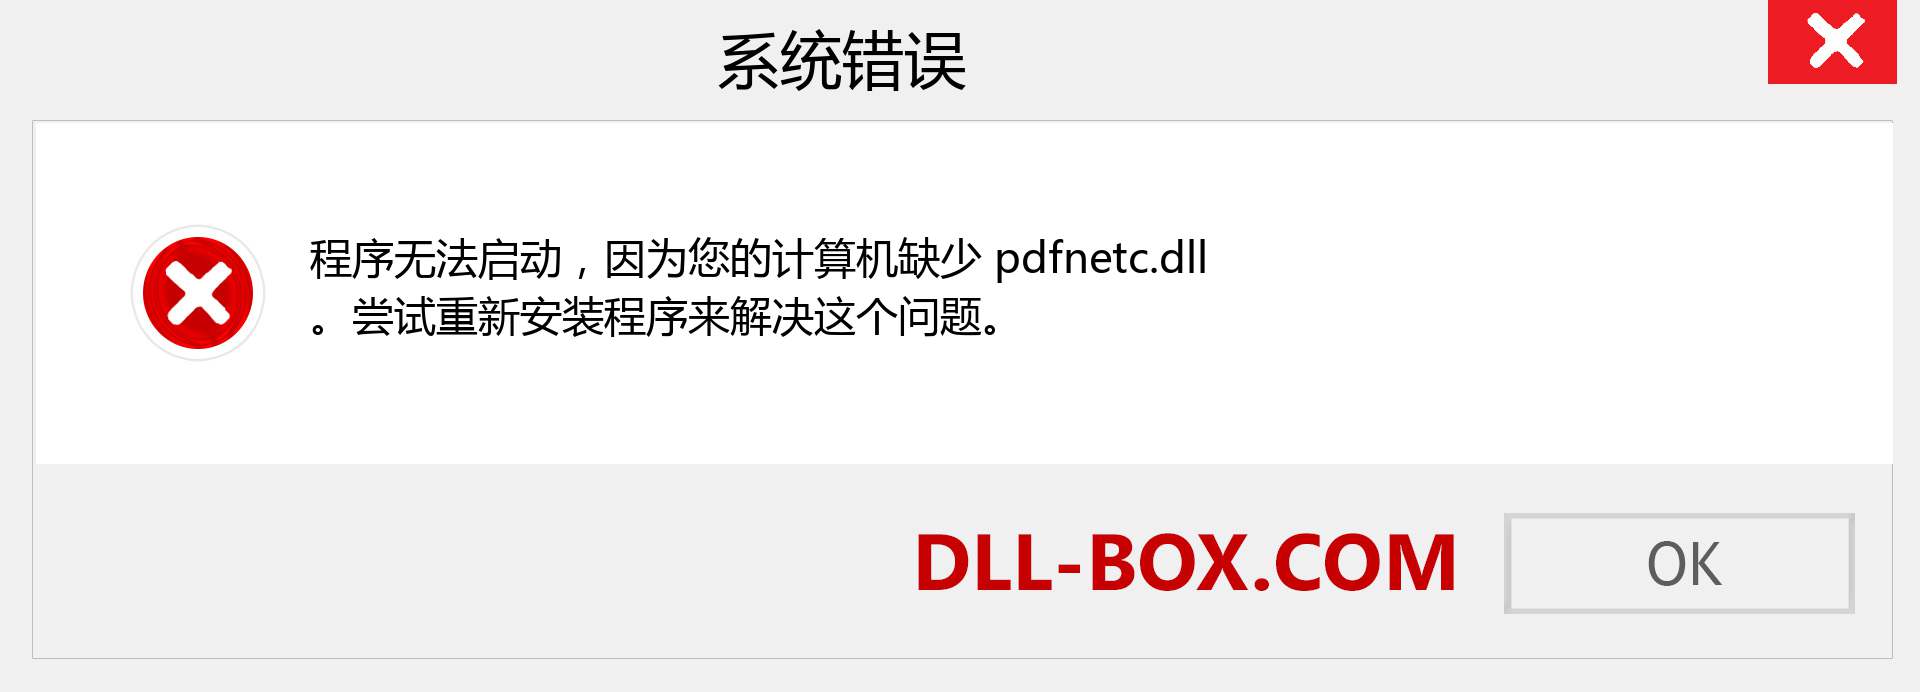 pdfnetc.dll 文件丢失？。 适用于 Windows 7、8、10 的下载 - 修复 Windows、照片、图像上的 pdfnetc dll 丢失错误